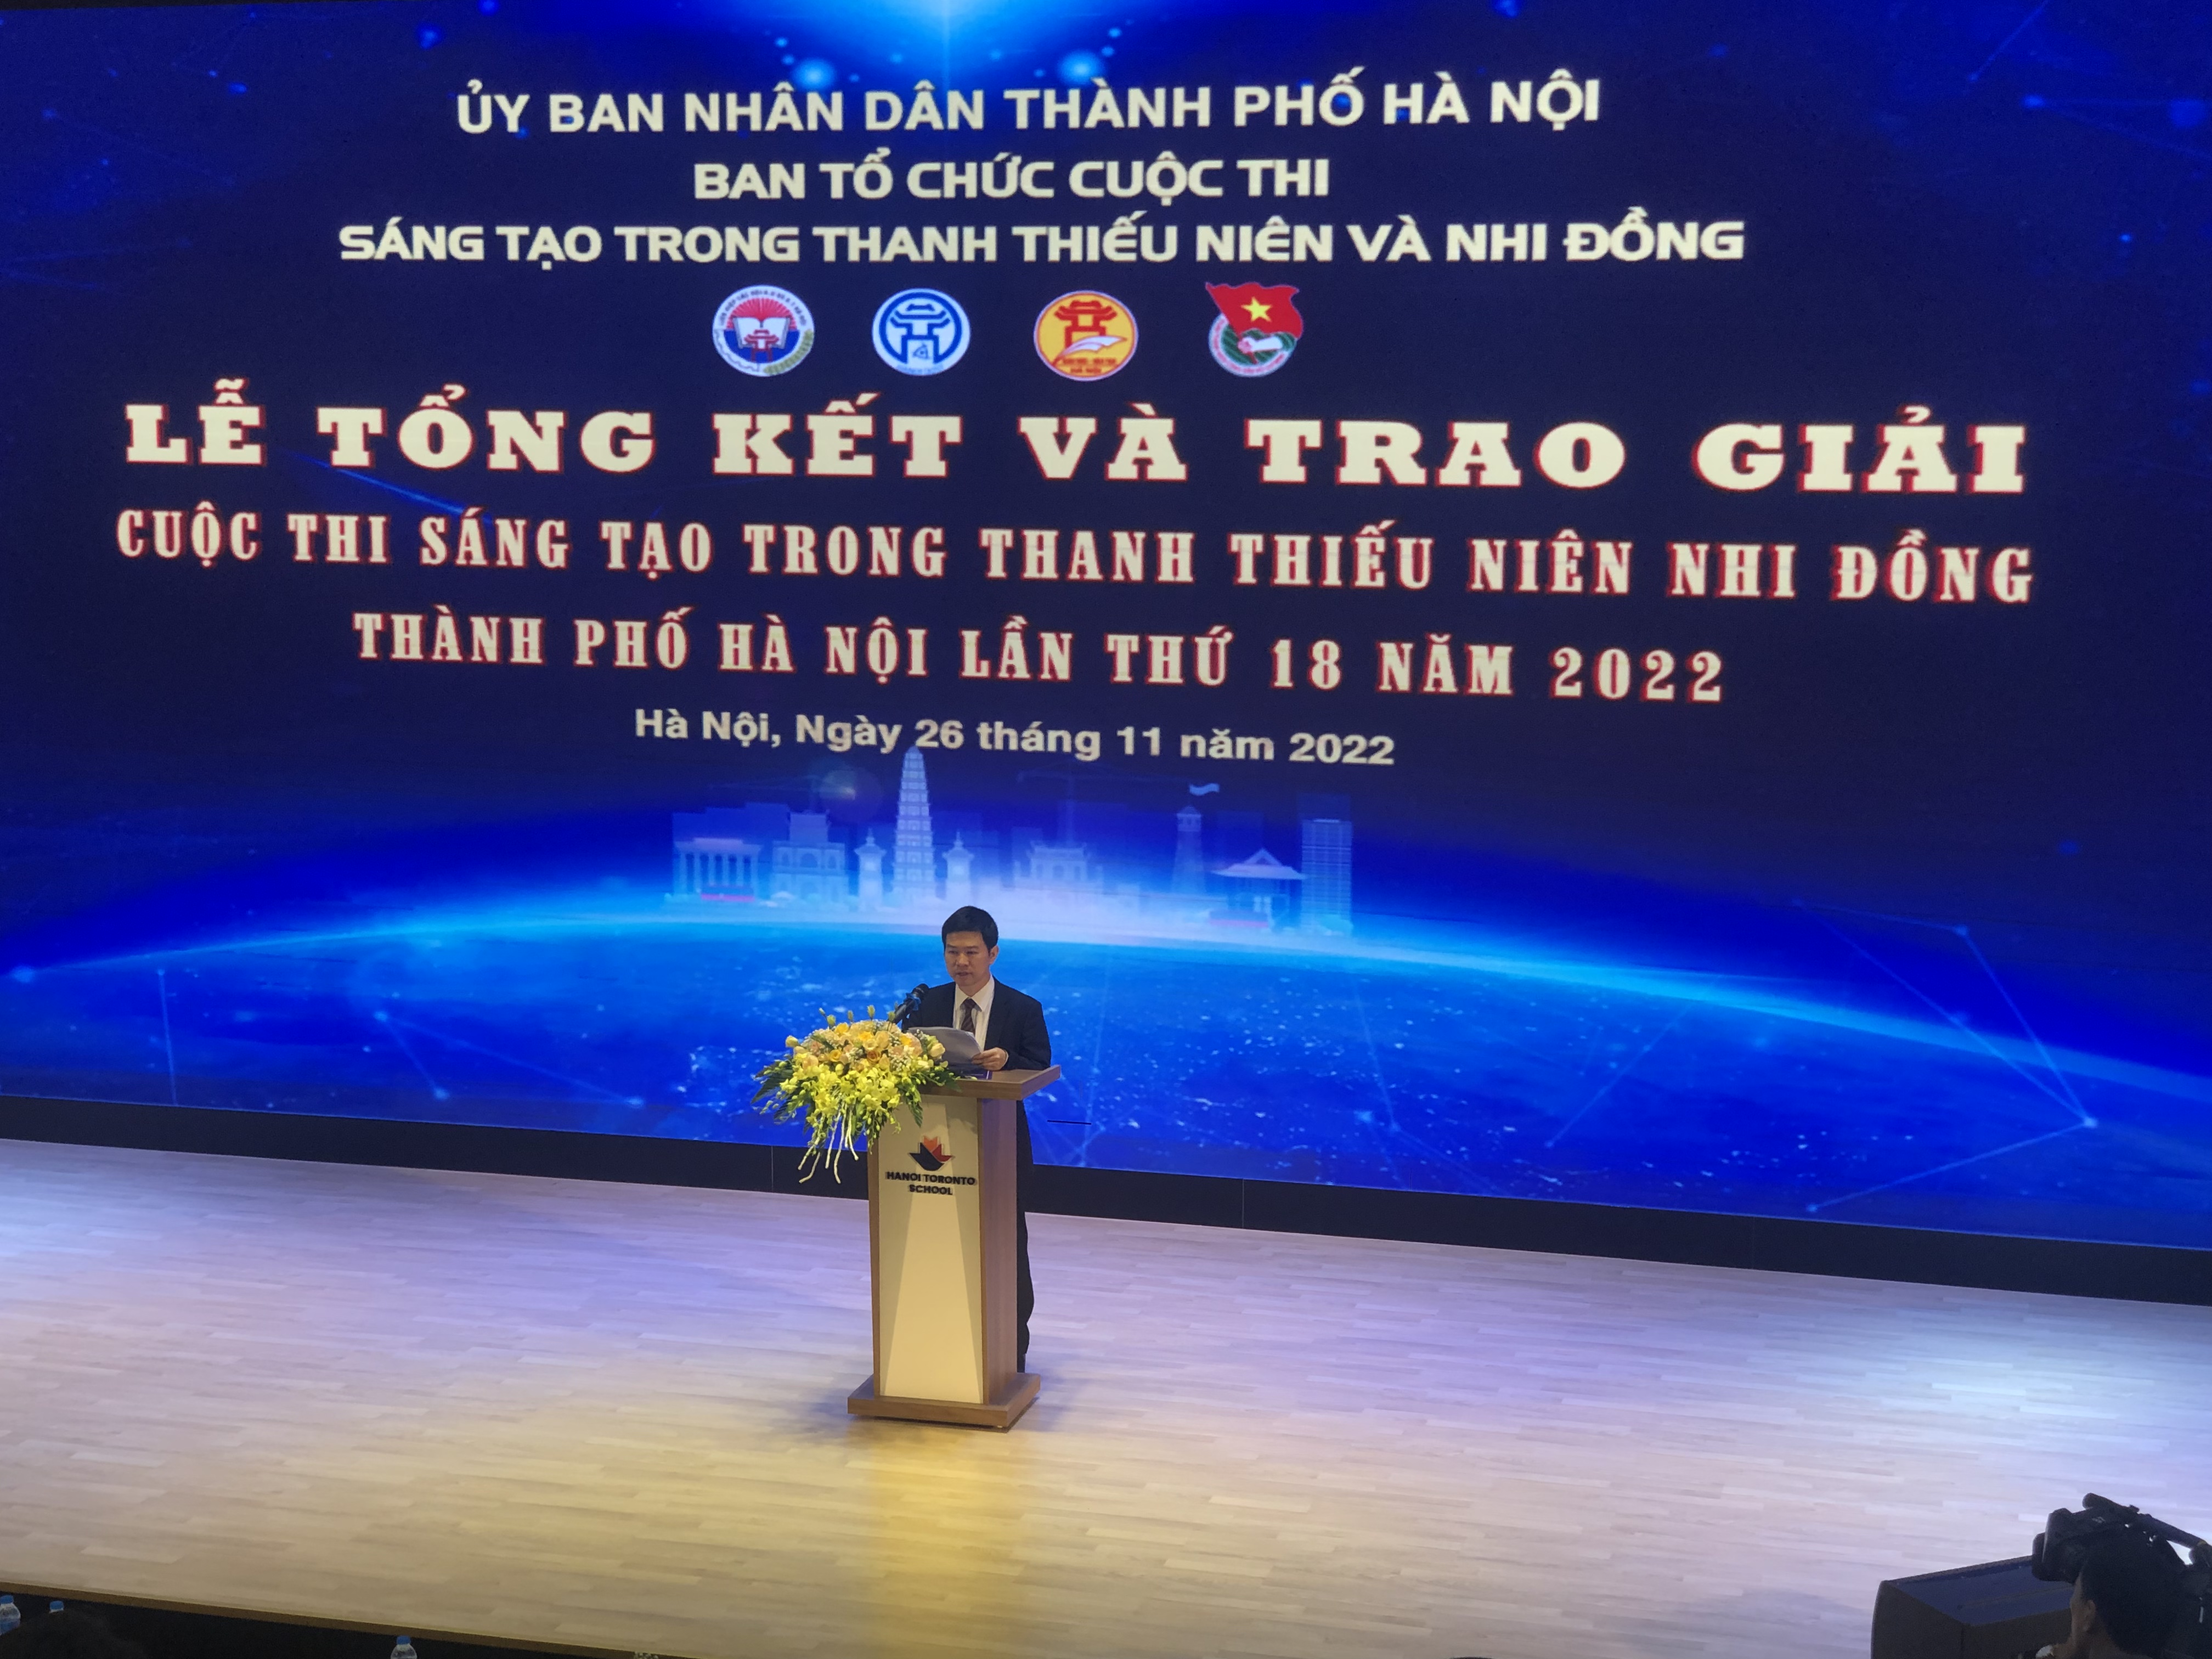 Phó Giám đốc Sở KH&CN Hà Nội Nguyễn Anh Tuấn phát biểu tại lễ tổng kết